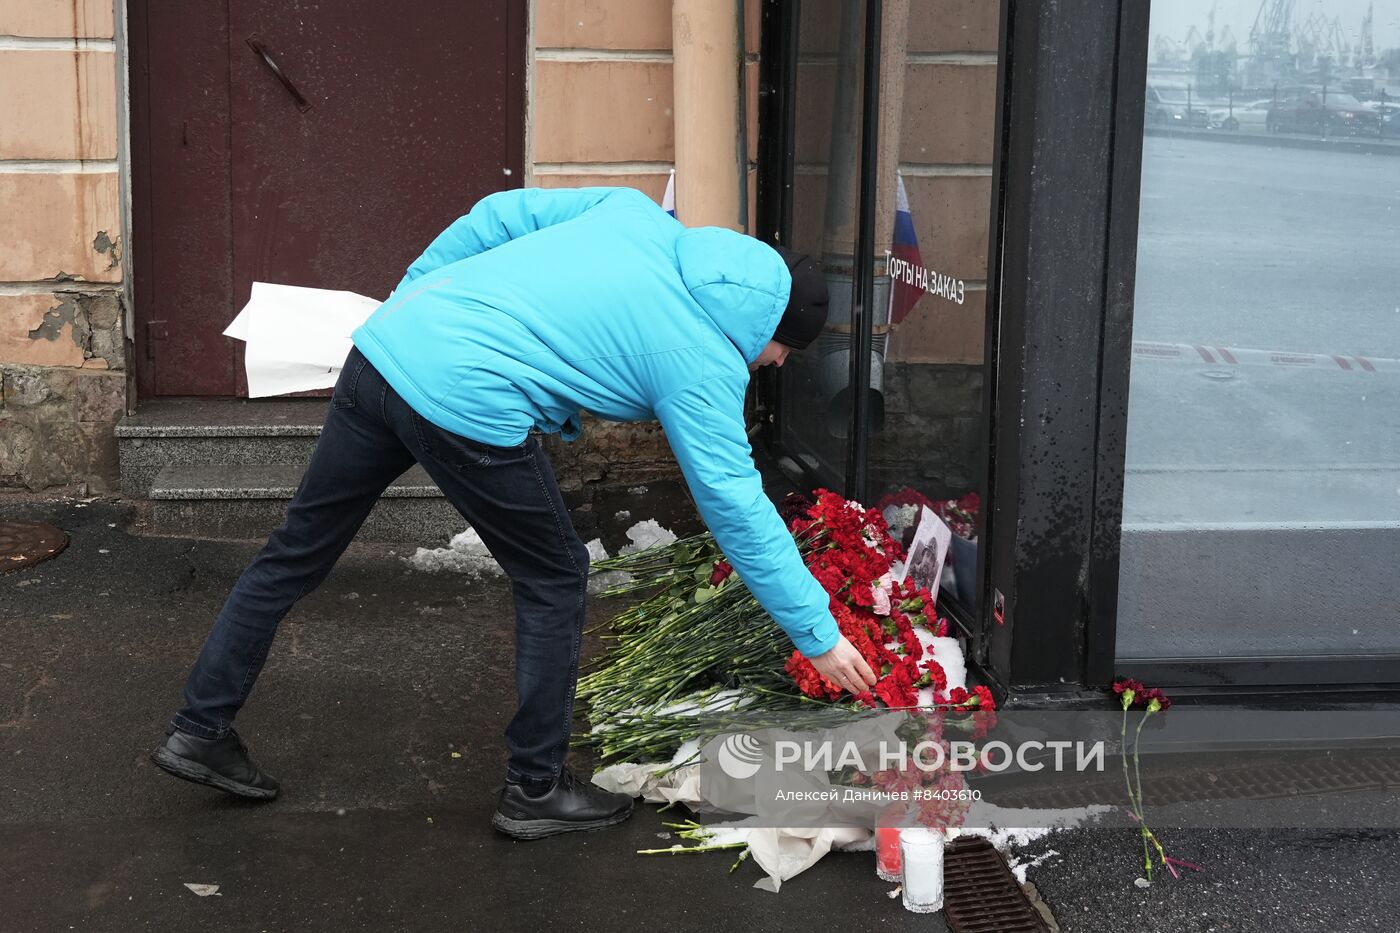 Цветы на месте взрыва на Университетской набережной в Петербурге